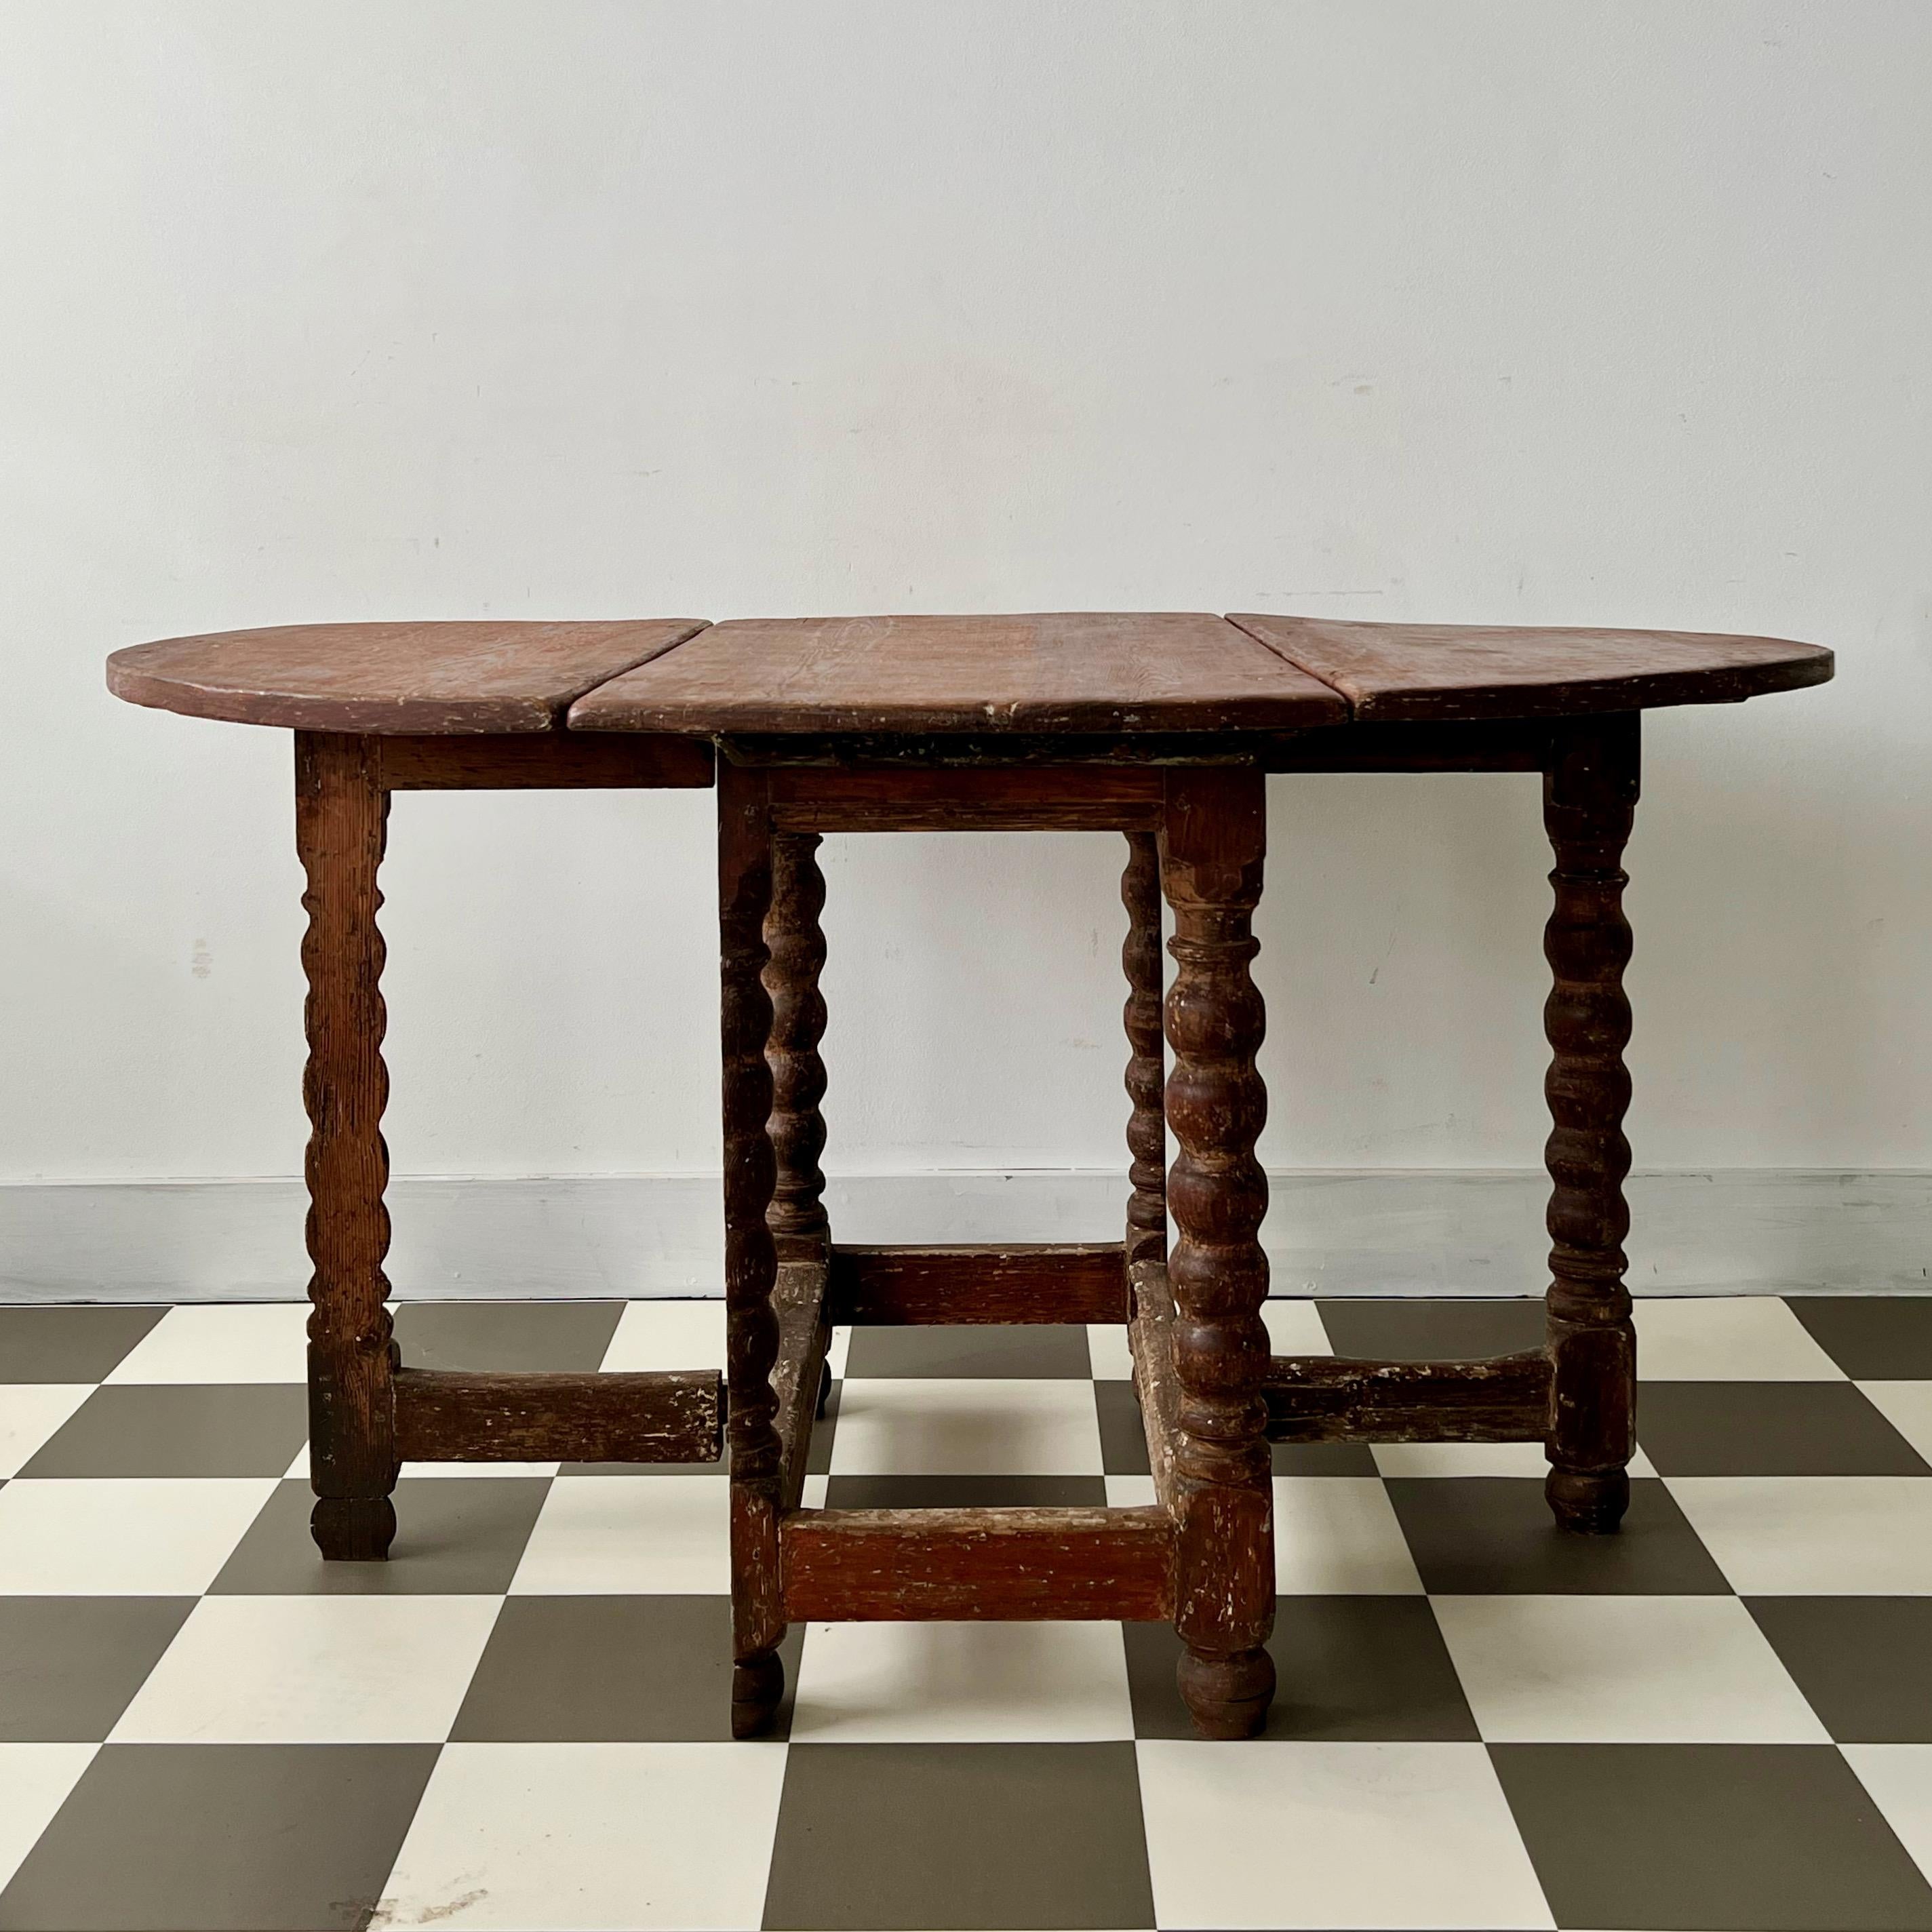 Schwedischer Barocktisch aus dem 18. Jahrhundert mit Klapptischen, die auf jeder Seite mit Beinen versehen sind und den Tisch auf 55